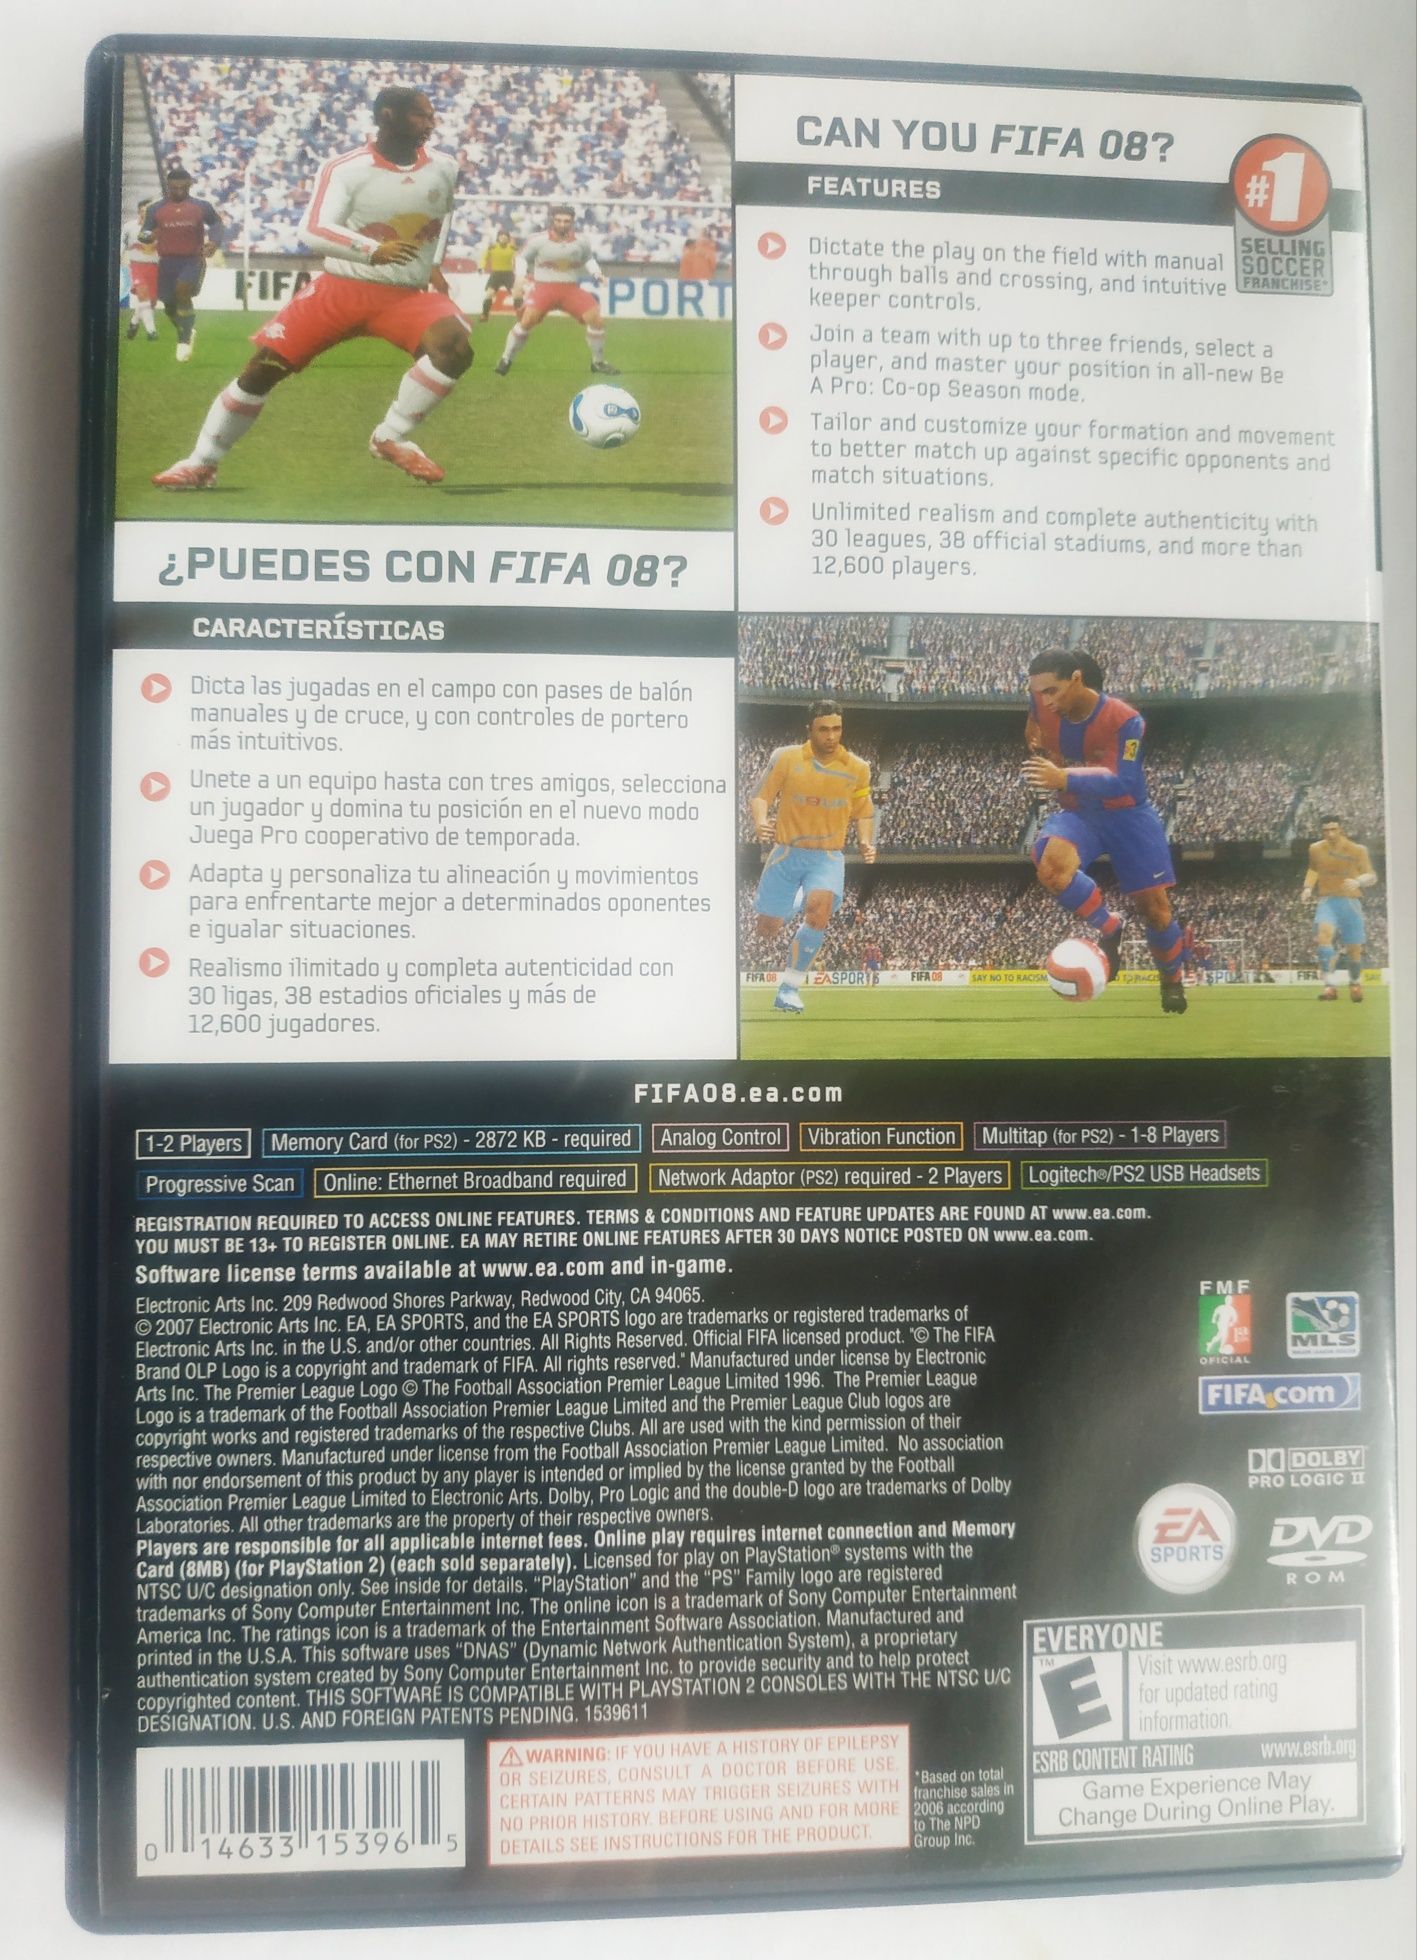 Gra FIFA 08 soccer PlayStation 2